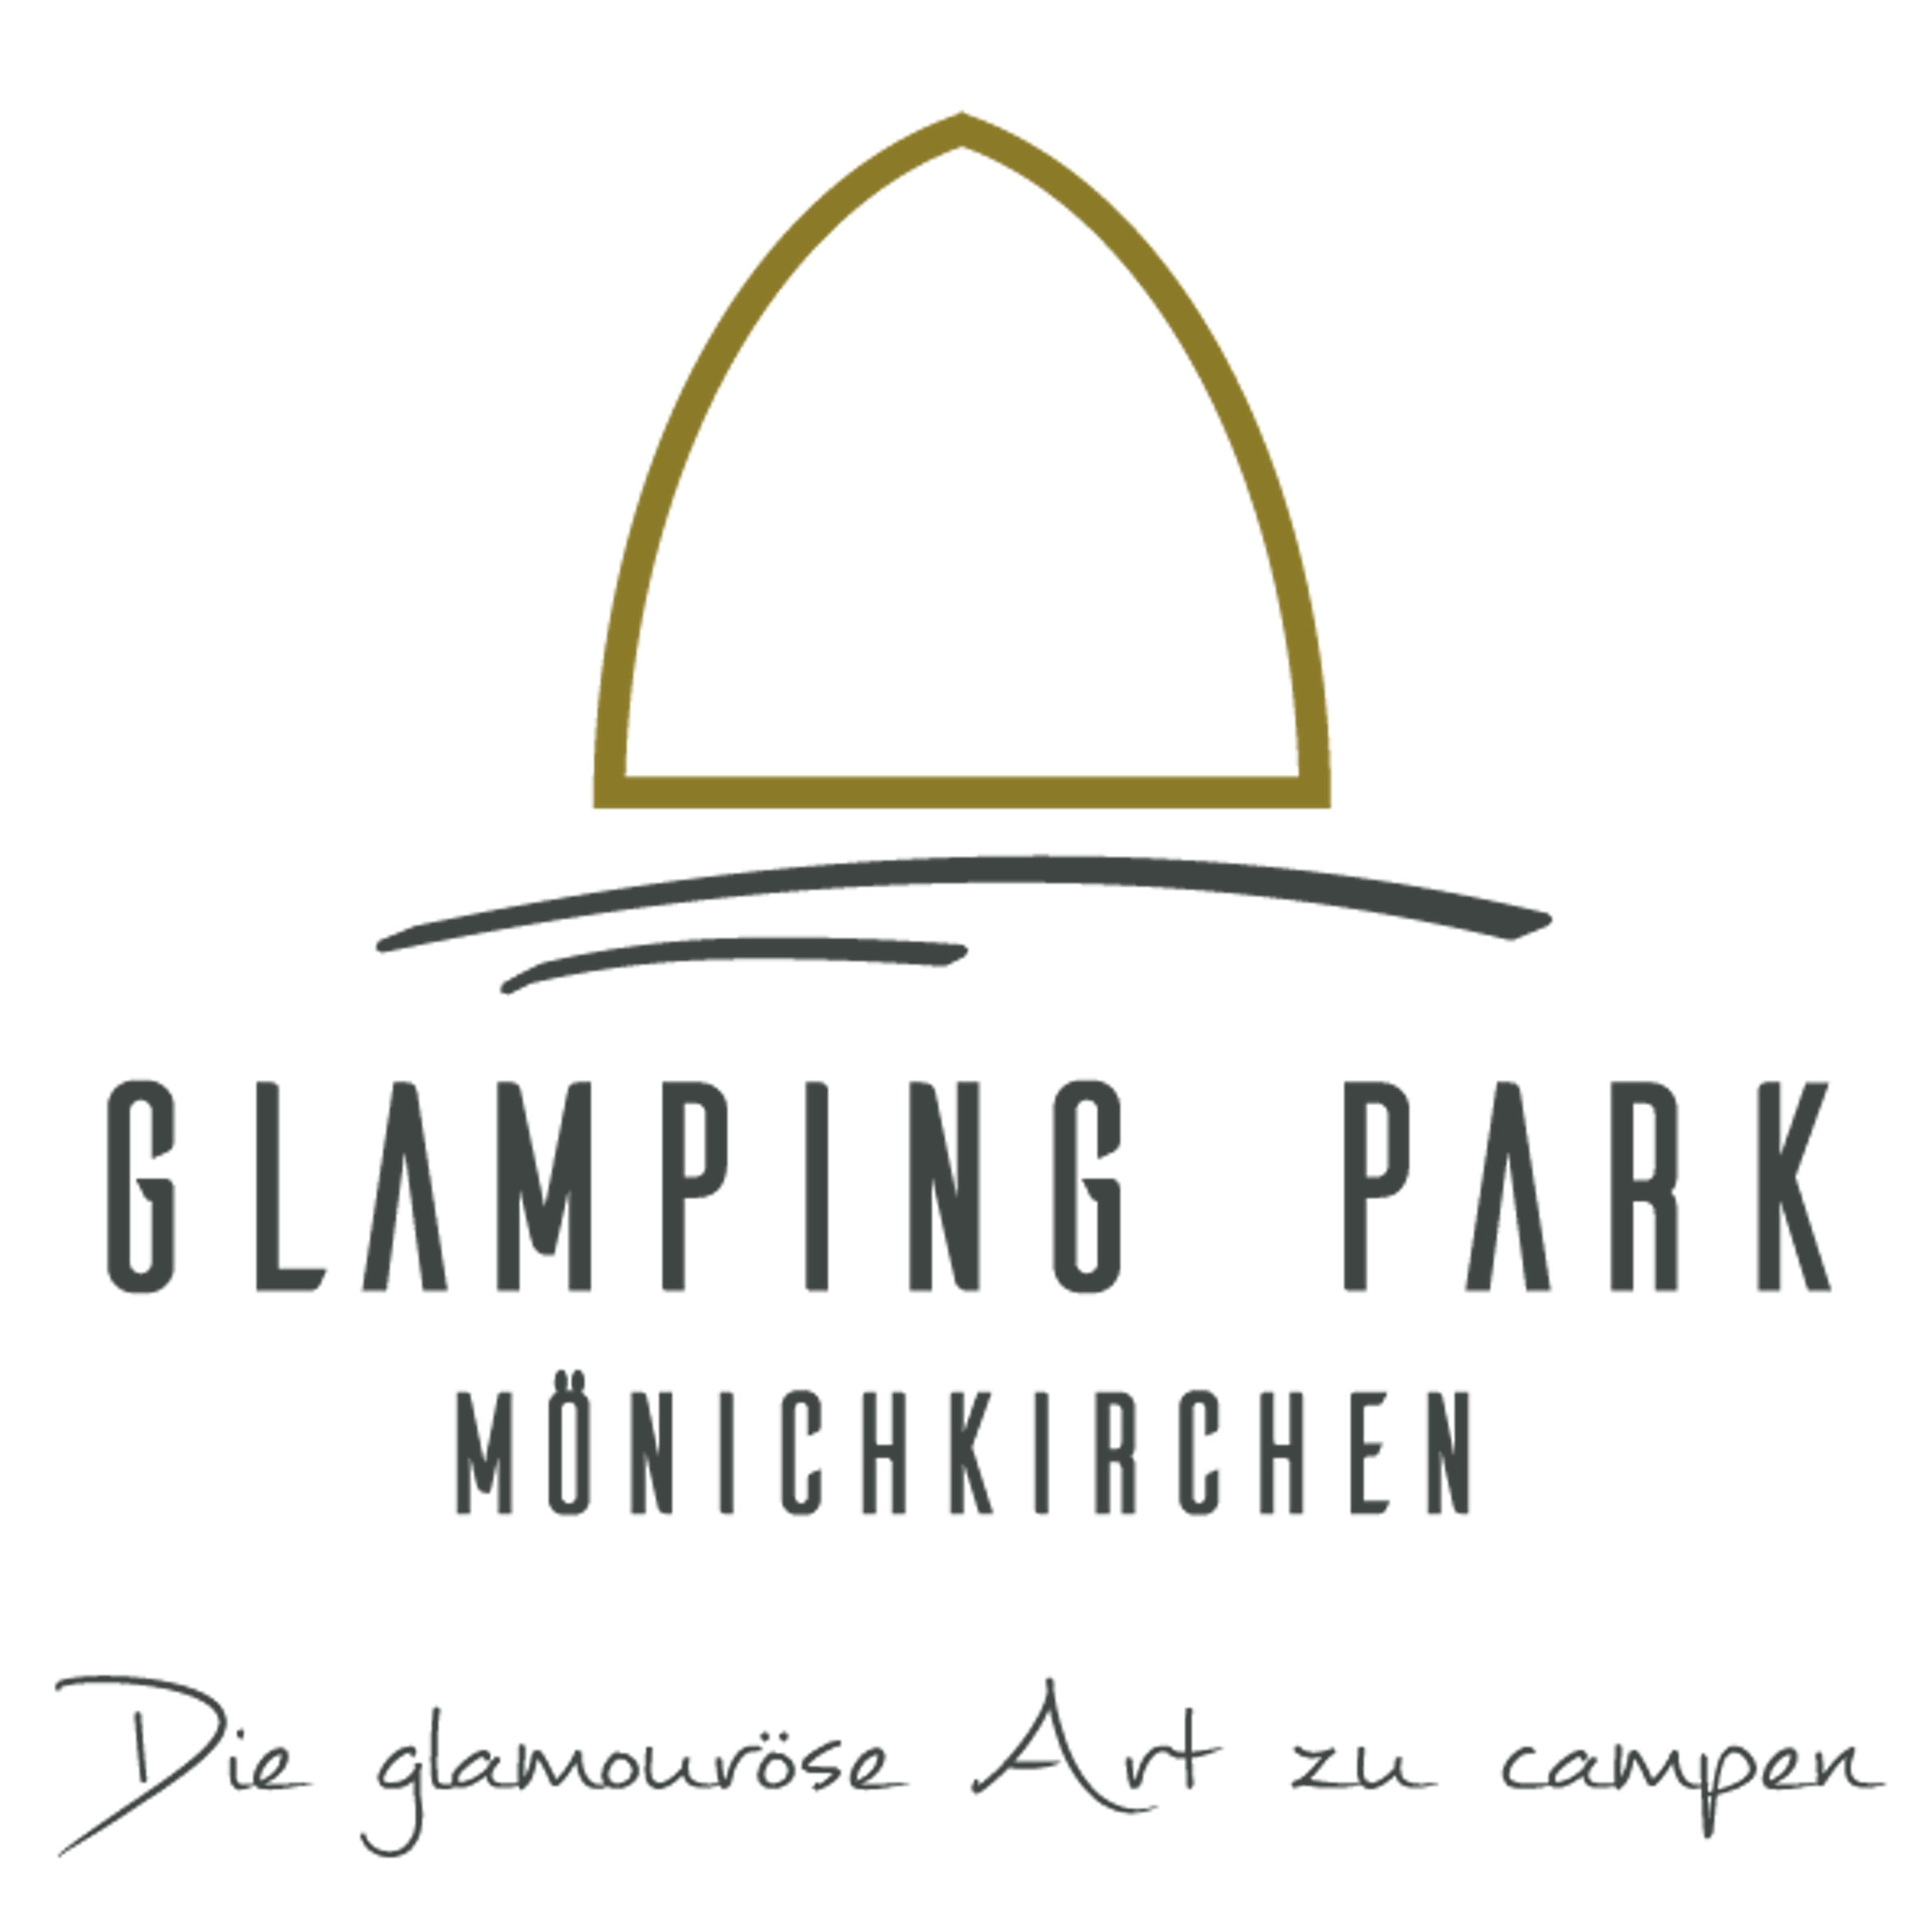 Glampingpark Mönichkirchen